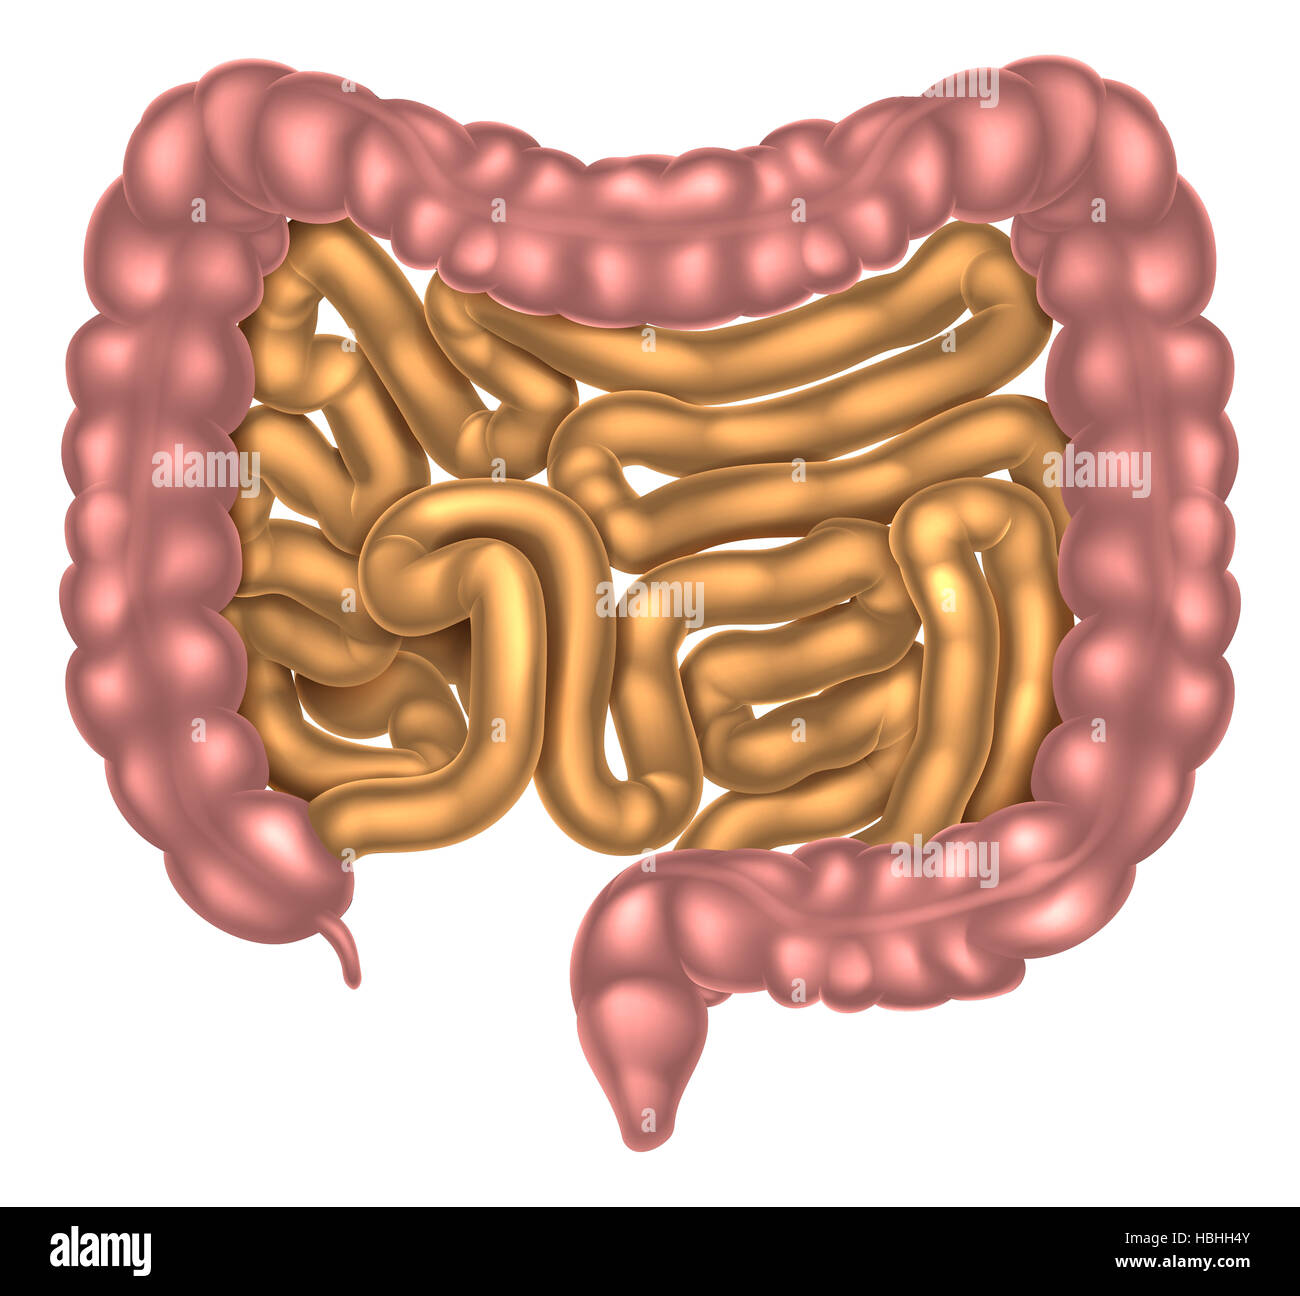 Une illustration de l'intestin grêle et le gros intestin fait partie du système digestif Banque D'Images